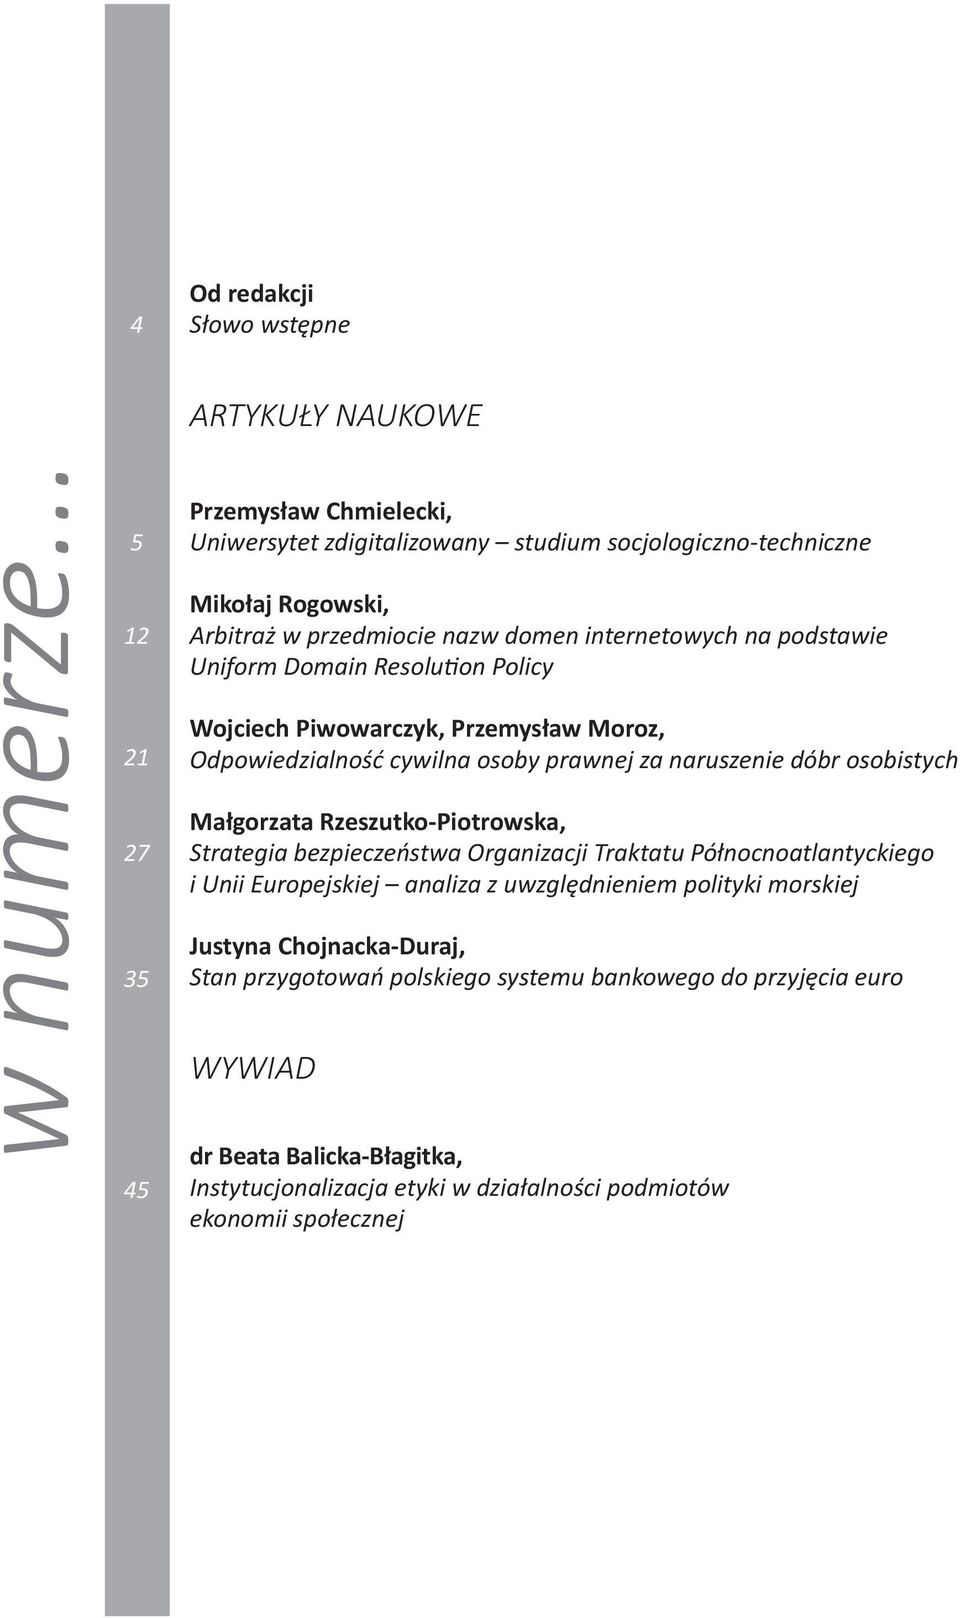 internetowych na podstawie Uniform Domain Resolution Policy Wojciech Piwowarczyk, Przemysław Moroz, Odpowiedzialność cywilna osoby prawnej za naruszenie dóbr osobistych Małgorzata